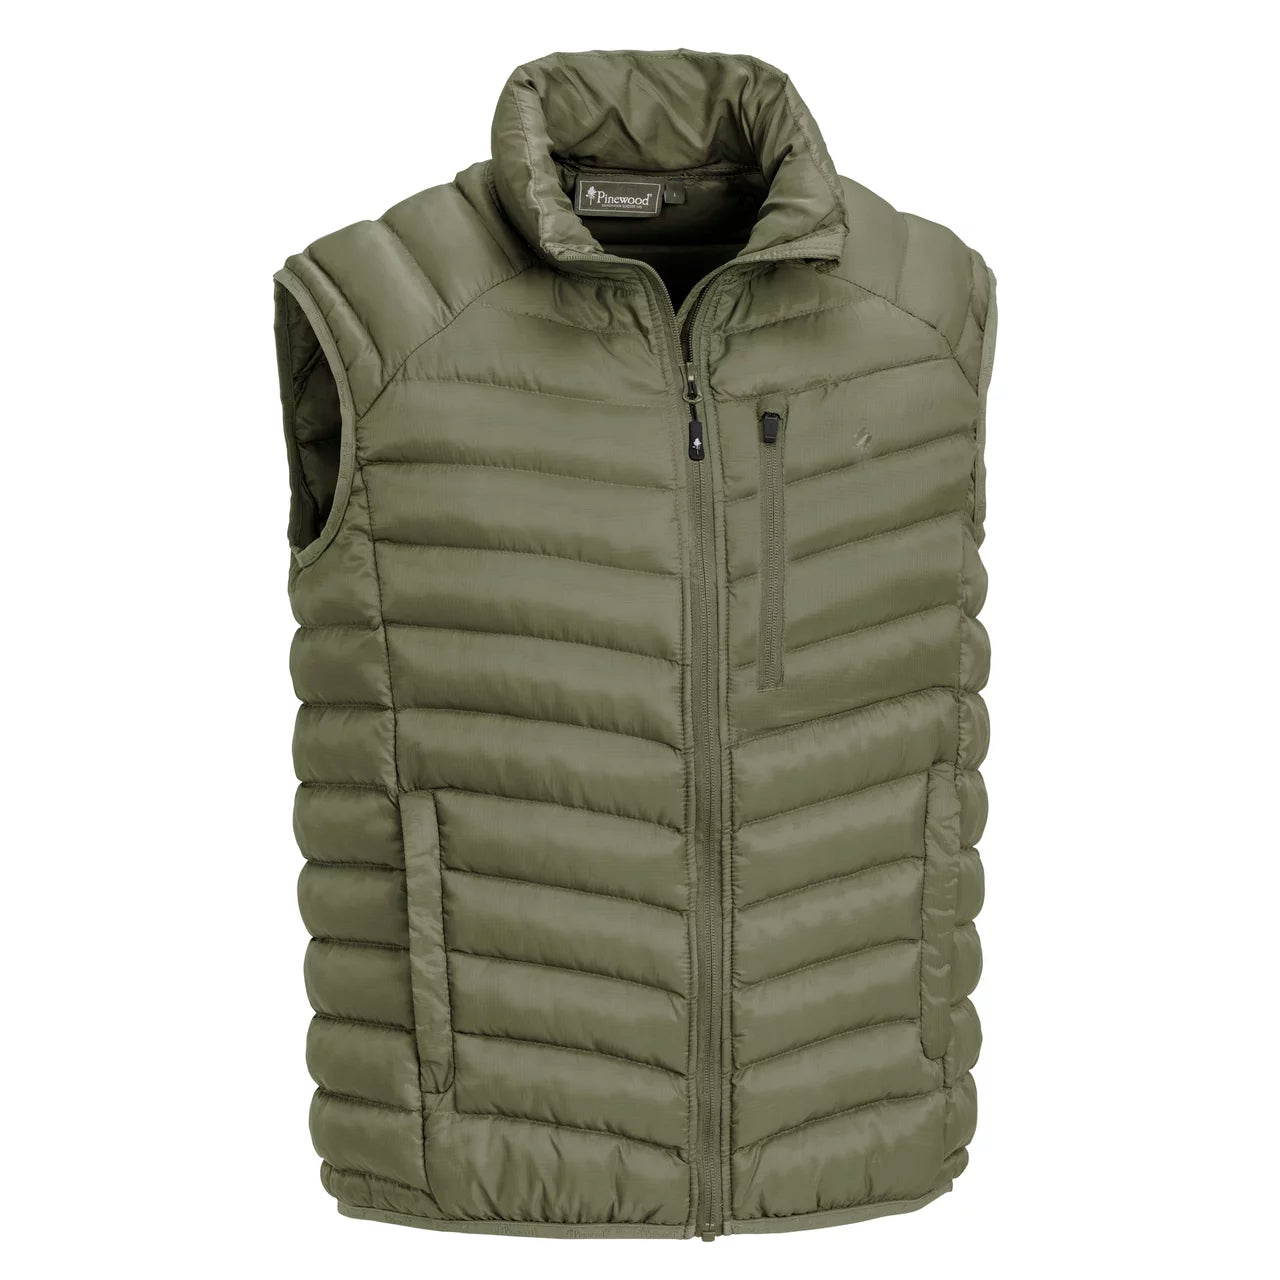 Abisko insulation vest